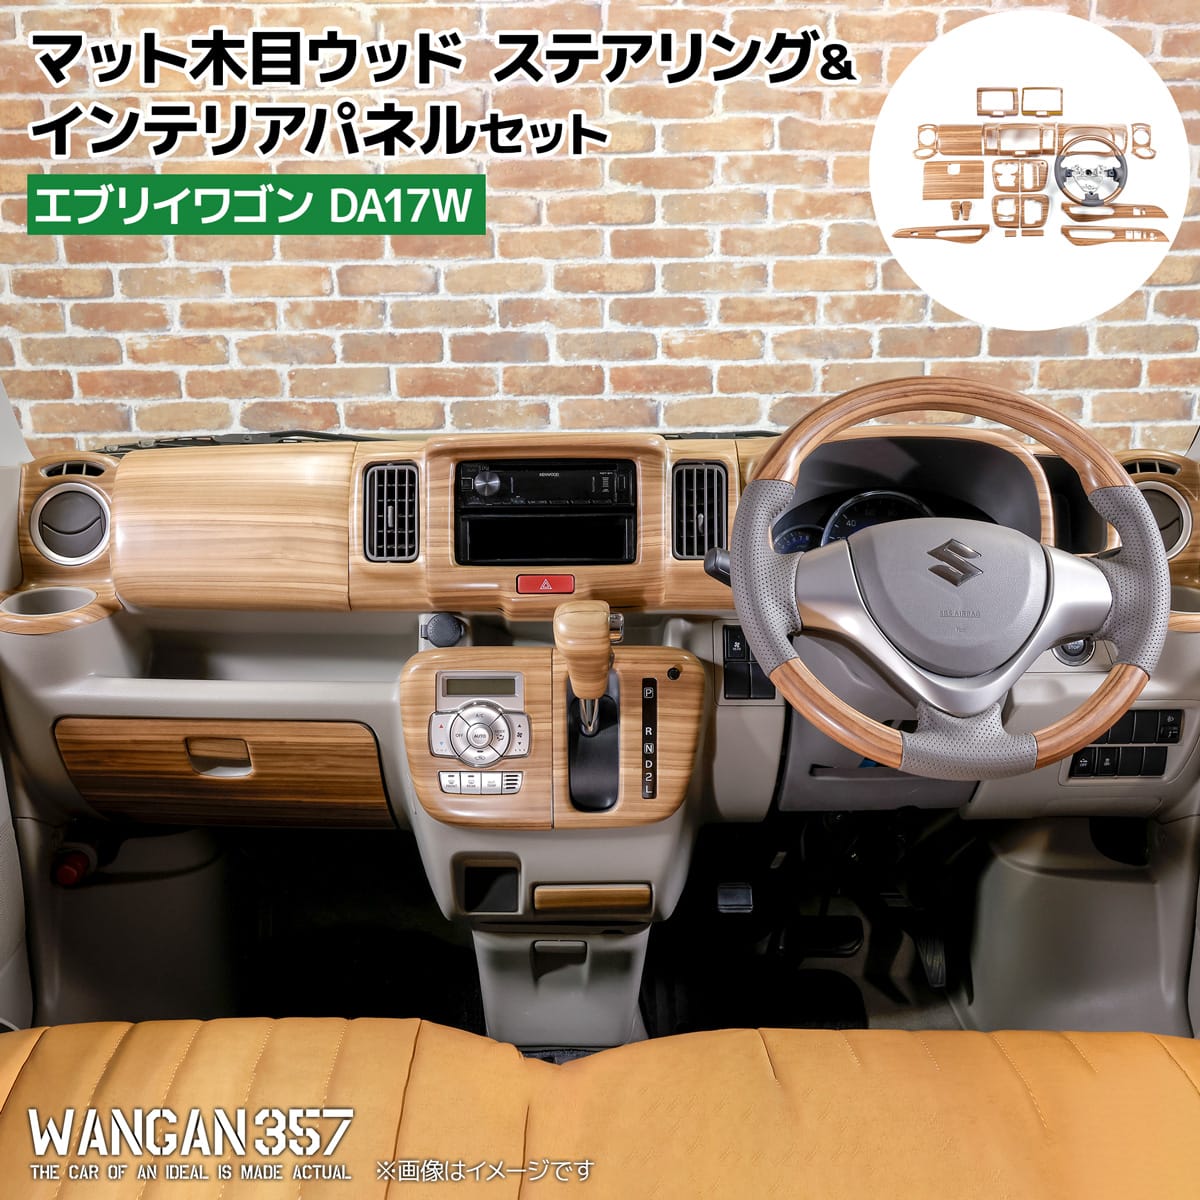 【楽天市場】WANGAN357 DA17W エブリイワゴン エブリー ワゴン 